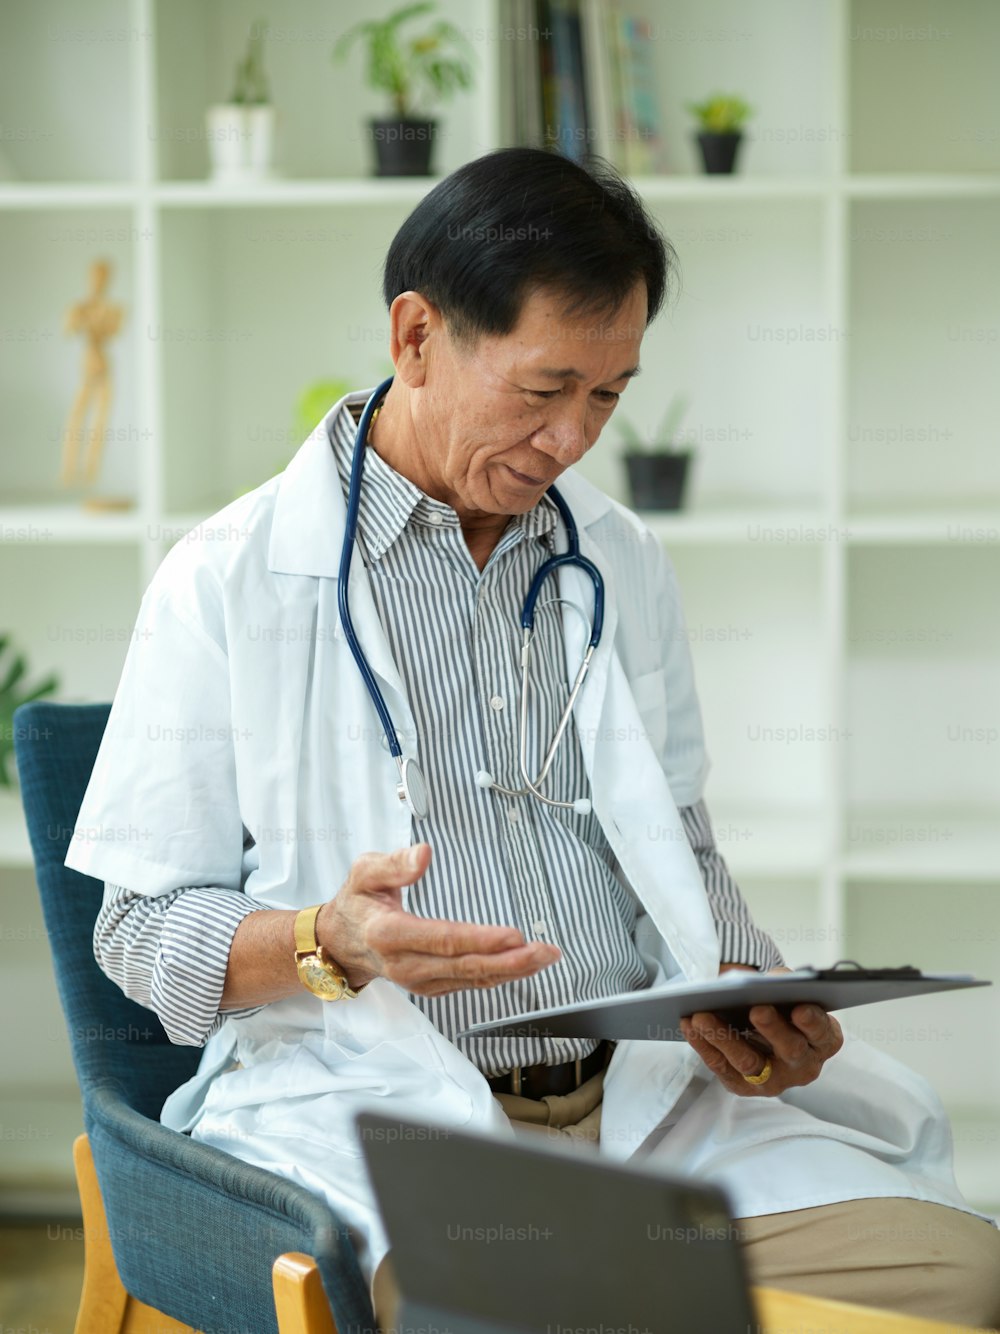 Un médico especialista de mediana edad revisa y lee un plan de tratamiento para un paciente que ha sido lesionado en un portapapeles médico.